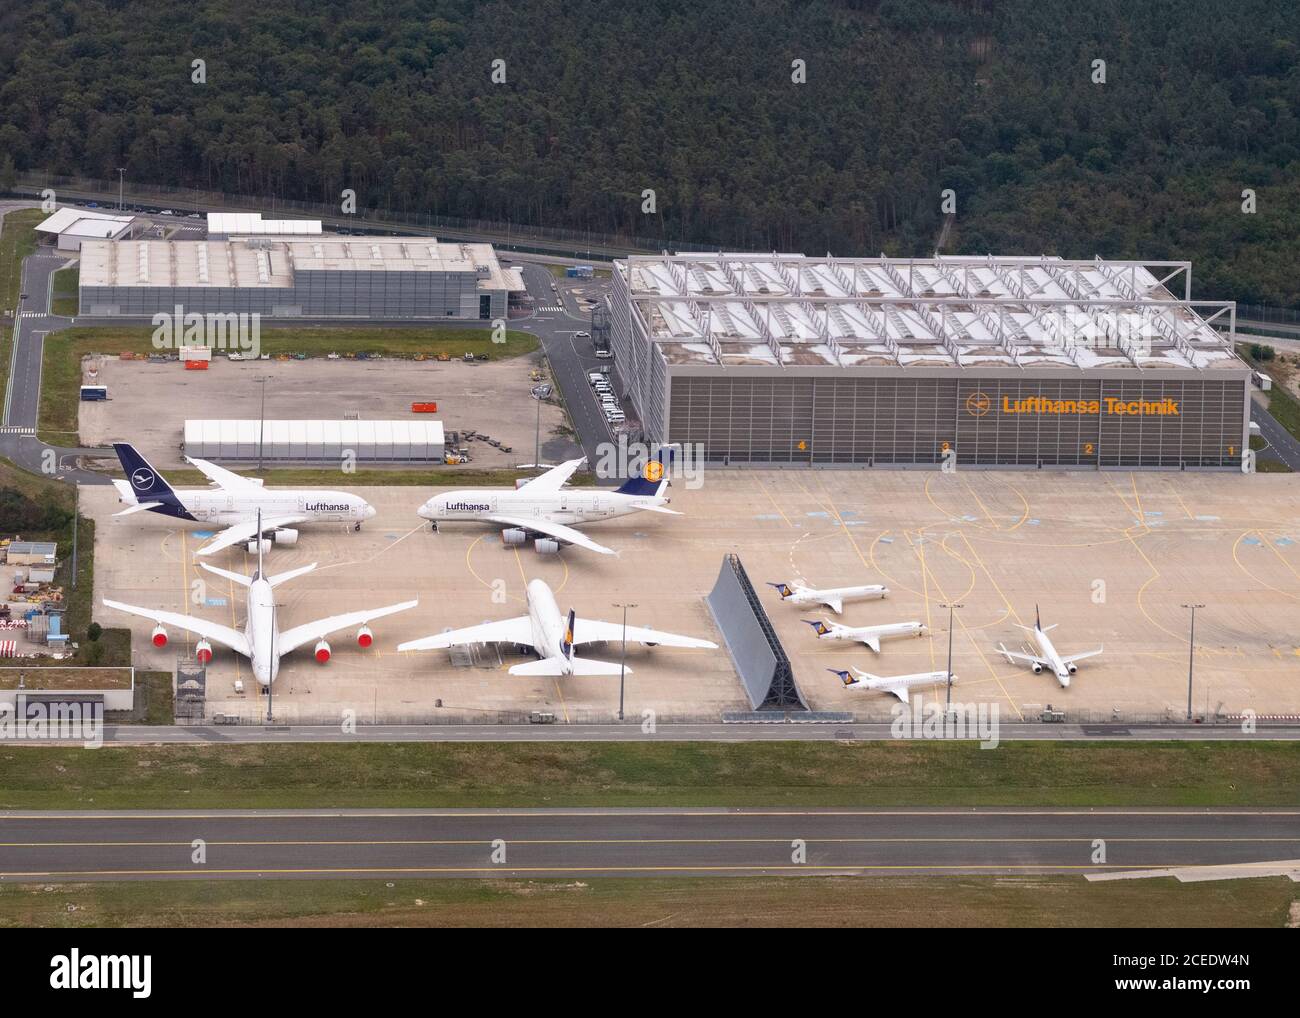 Les avions airbus A380 de Lufthansa sont mis à la terre et stationnés avec des fenêtres scellées à l'extérieur de Lufthansa Technik pendant la pandémie de coronavirus 2020, Francfort, Allemagne Banque D'Images